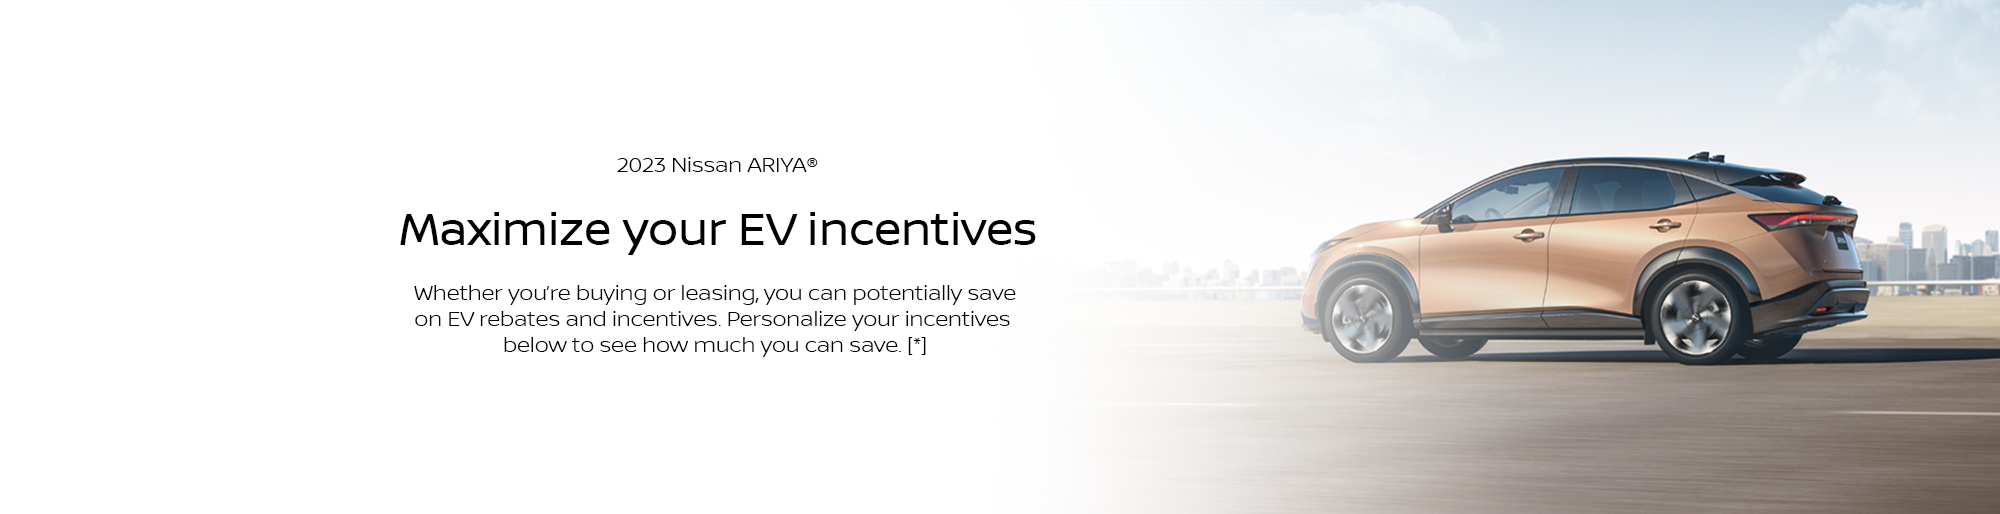 nissan-ariya-ev-rebates-incentives